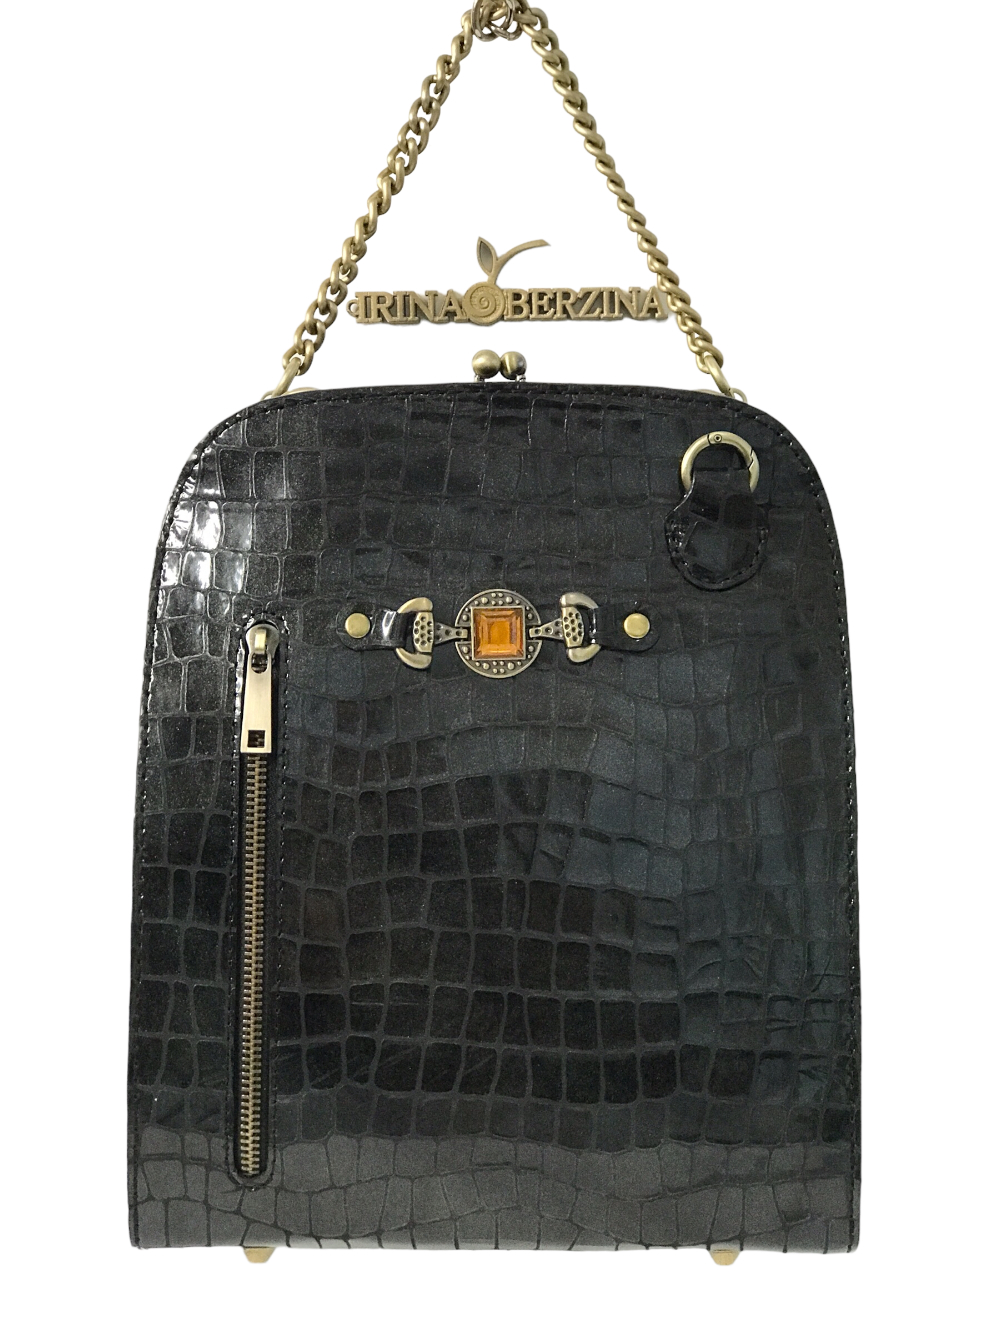 картинка кожаные  "Камалия-10" - Женская кожаная сумка с двойным фермуаром.Темный графит, крокодил, тиснение, антик от Ирины Берзиной